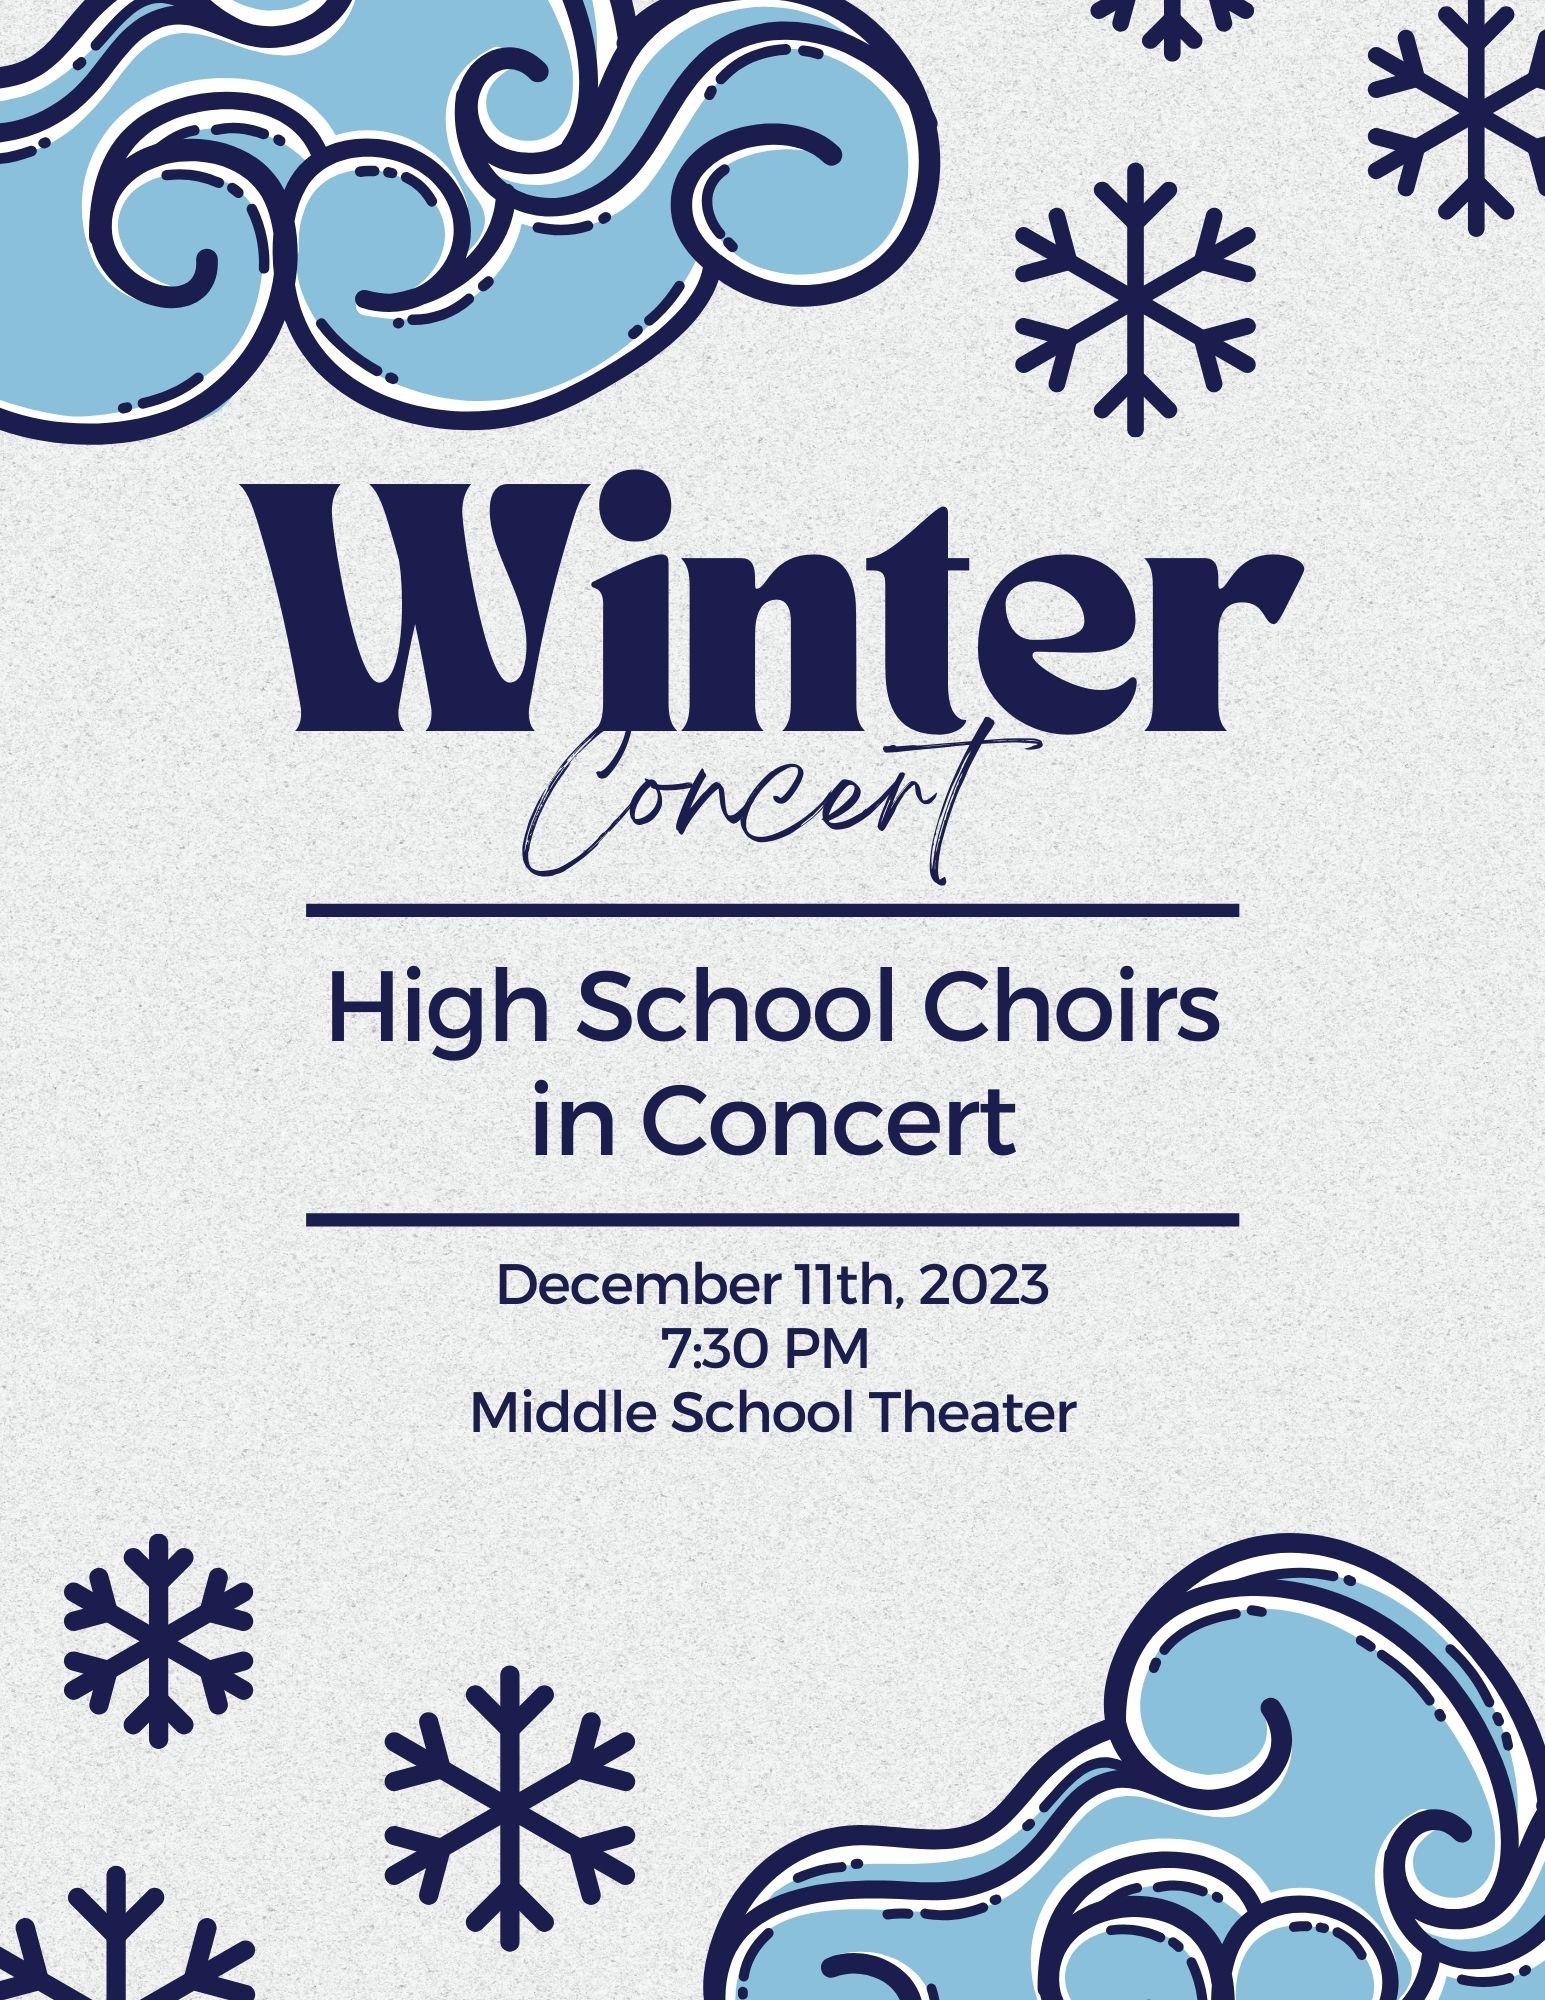 High School Winter Concert Image